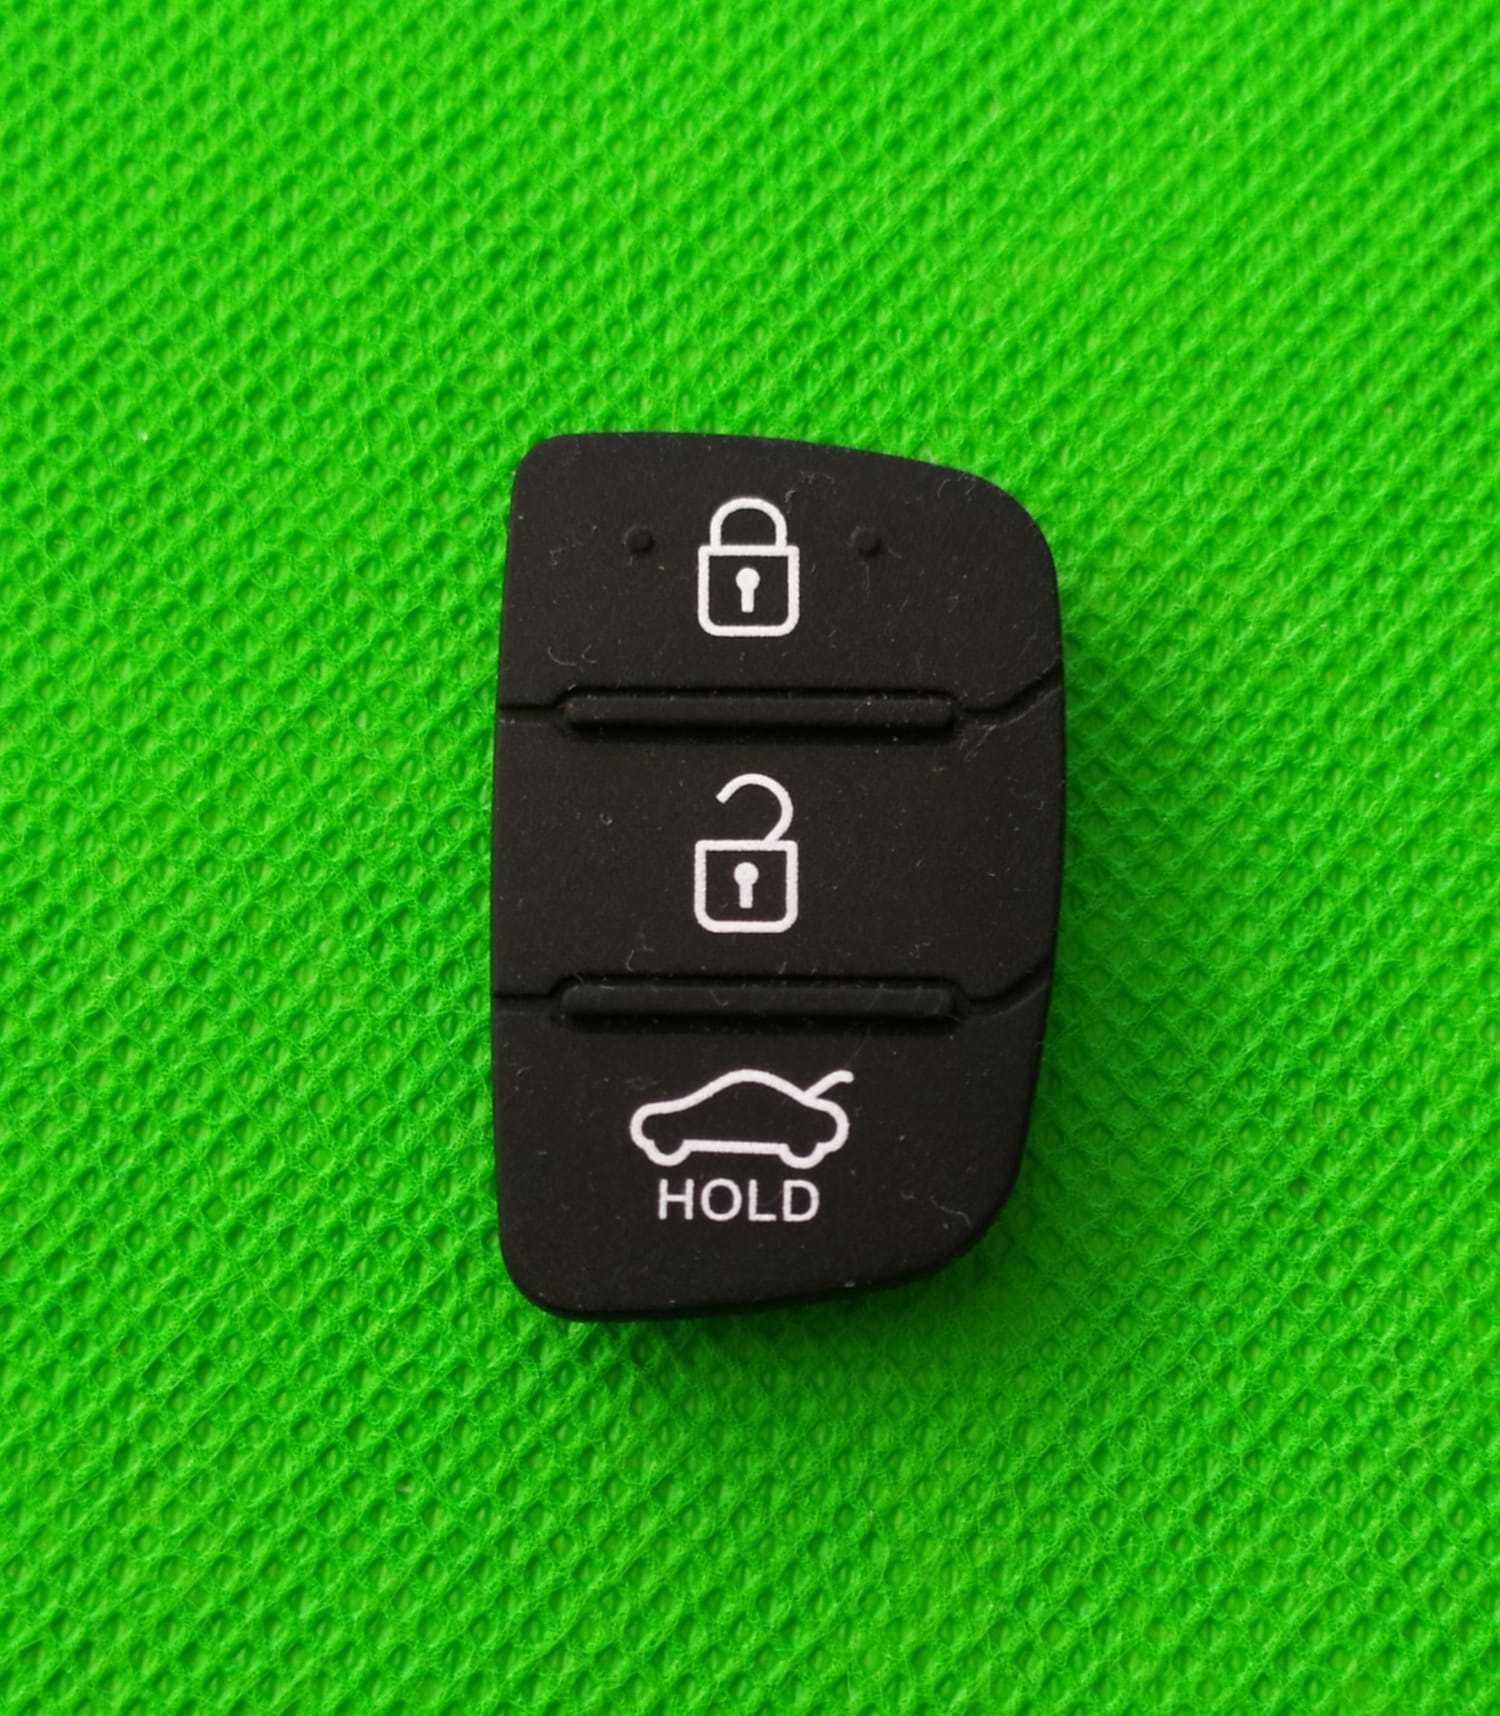 Бутони за ключ Hyundai / Кутийка Ключ Хюндай